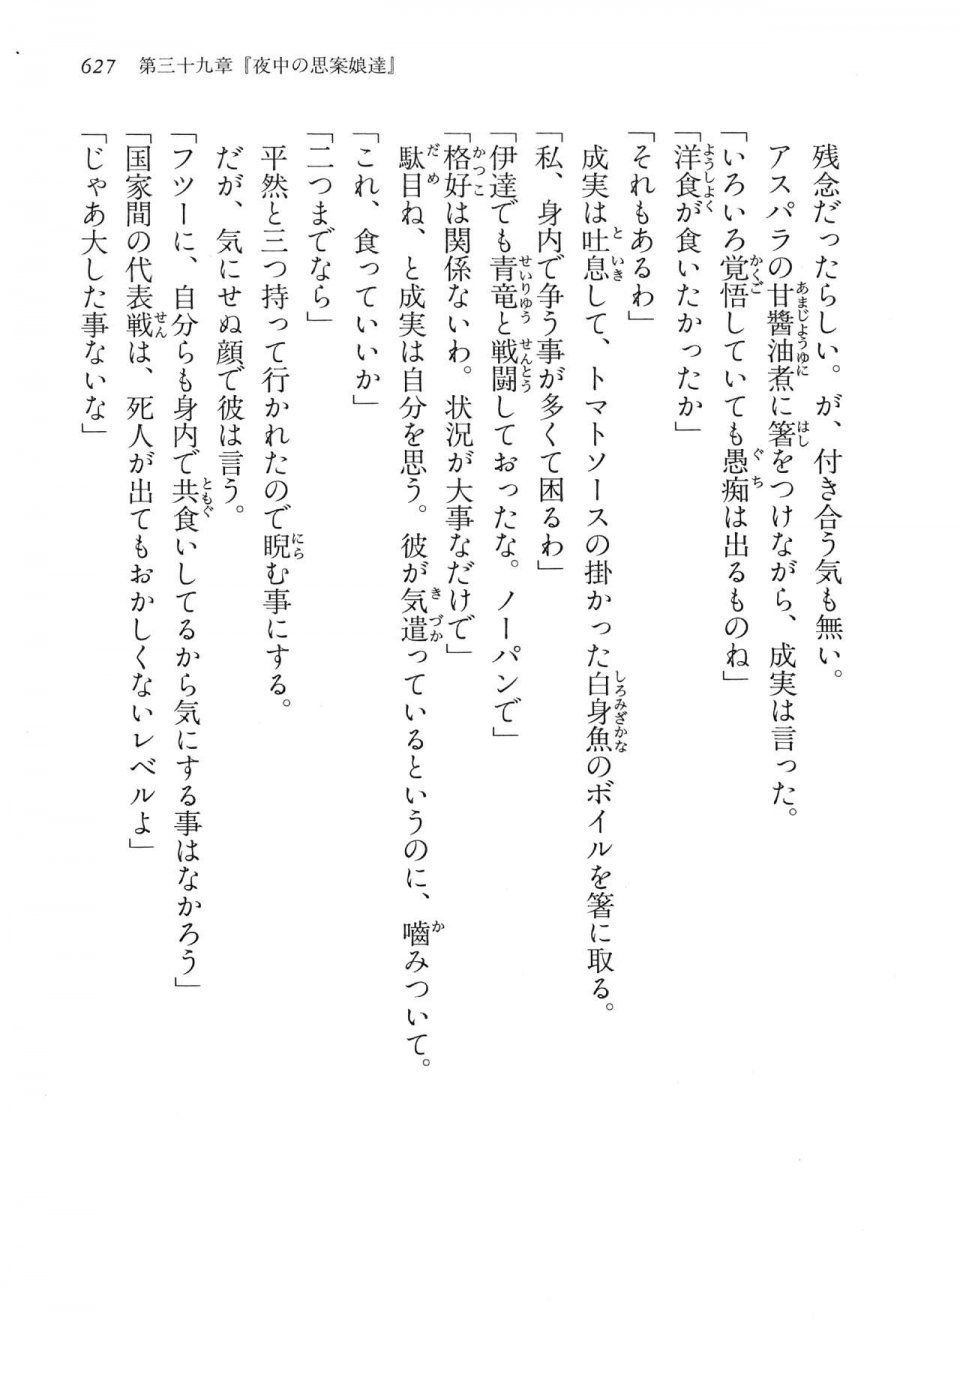 Kyoukai Senjou no Horizon LN Vol 14(6B) - Photo #627